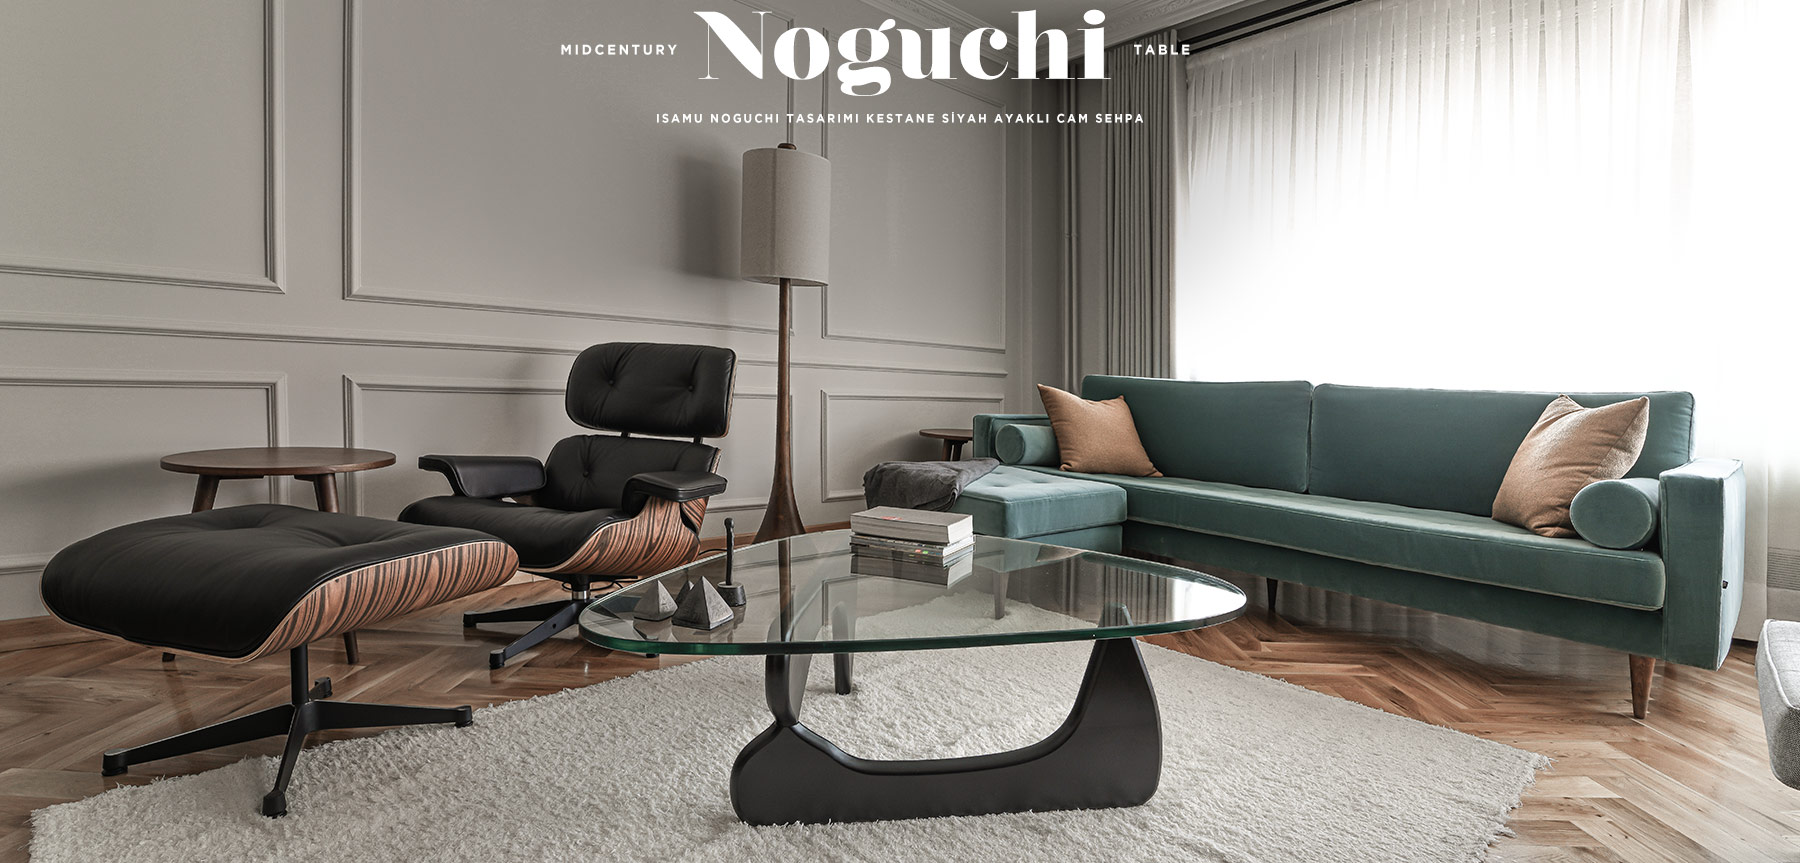 Siyah Kestane Noguchi Table'in resmi